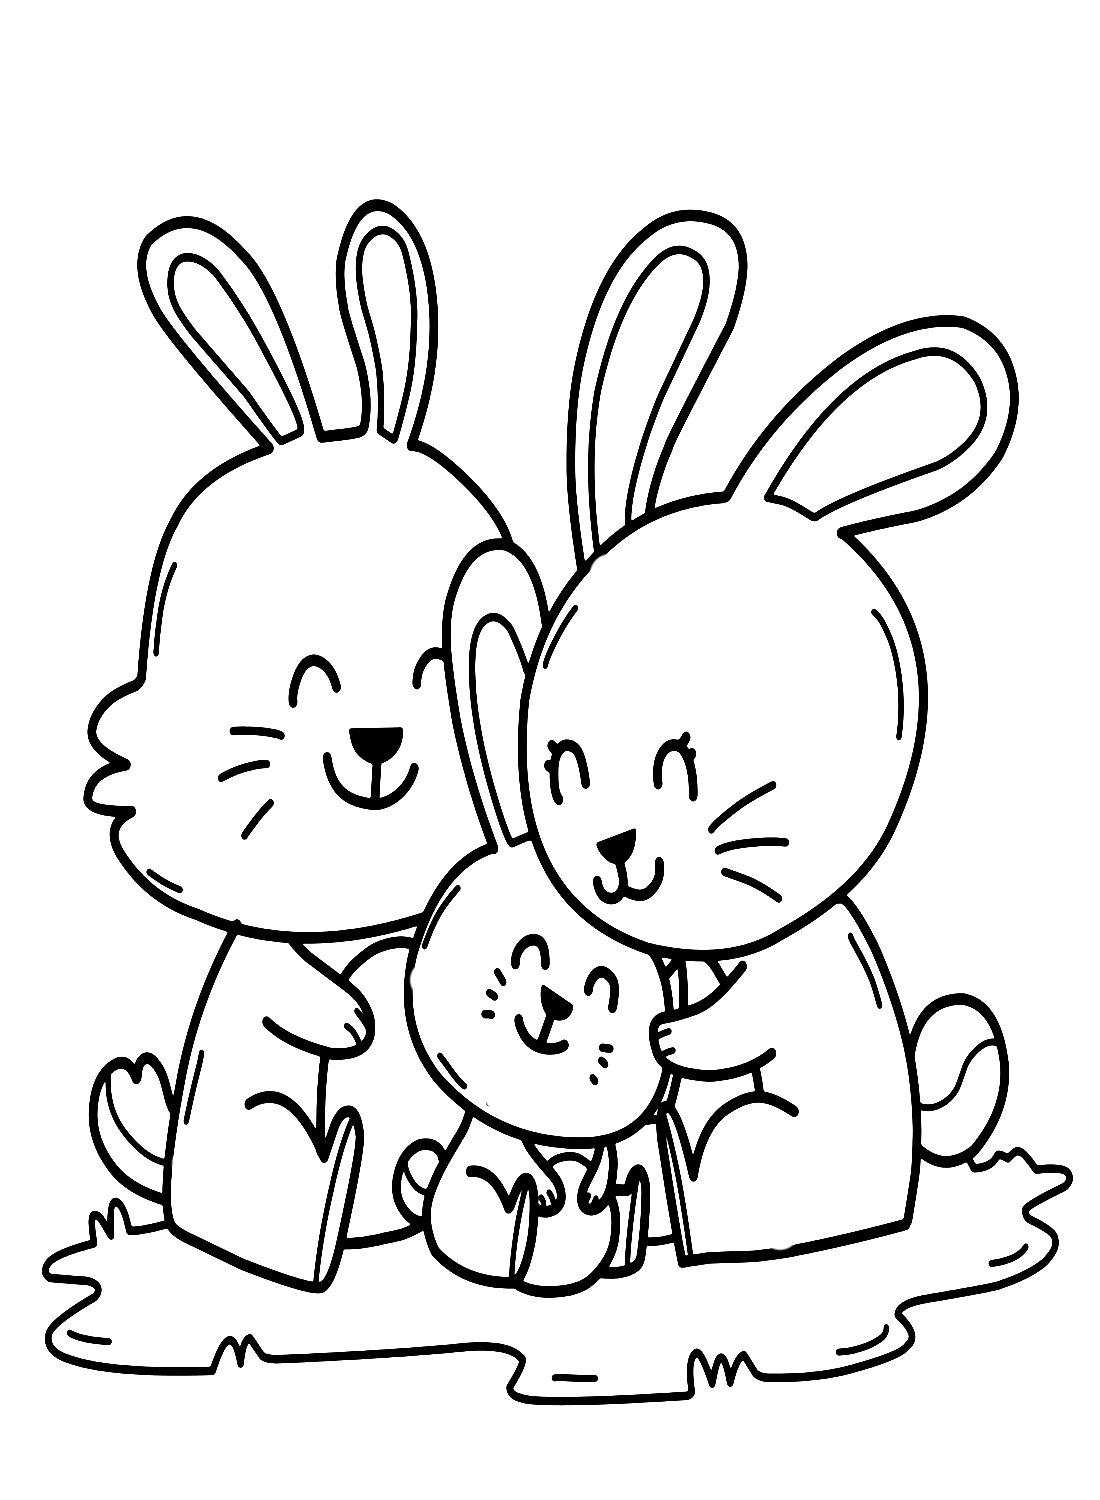 Família de coelhos se abraçando from Rabbit